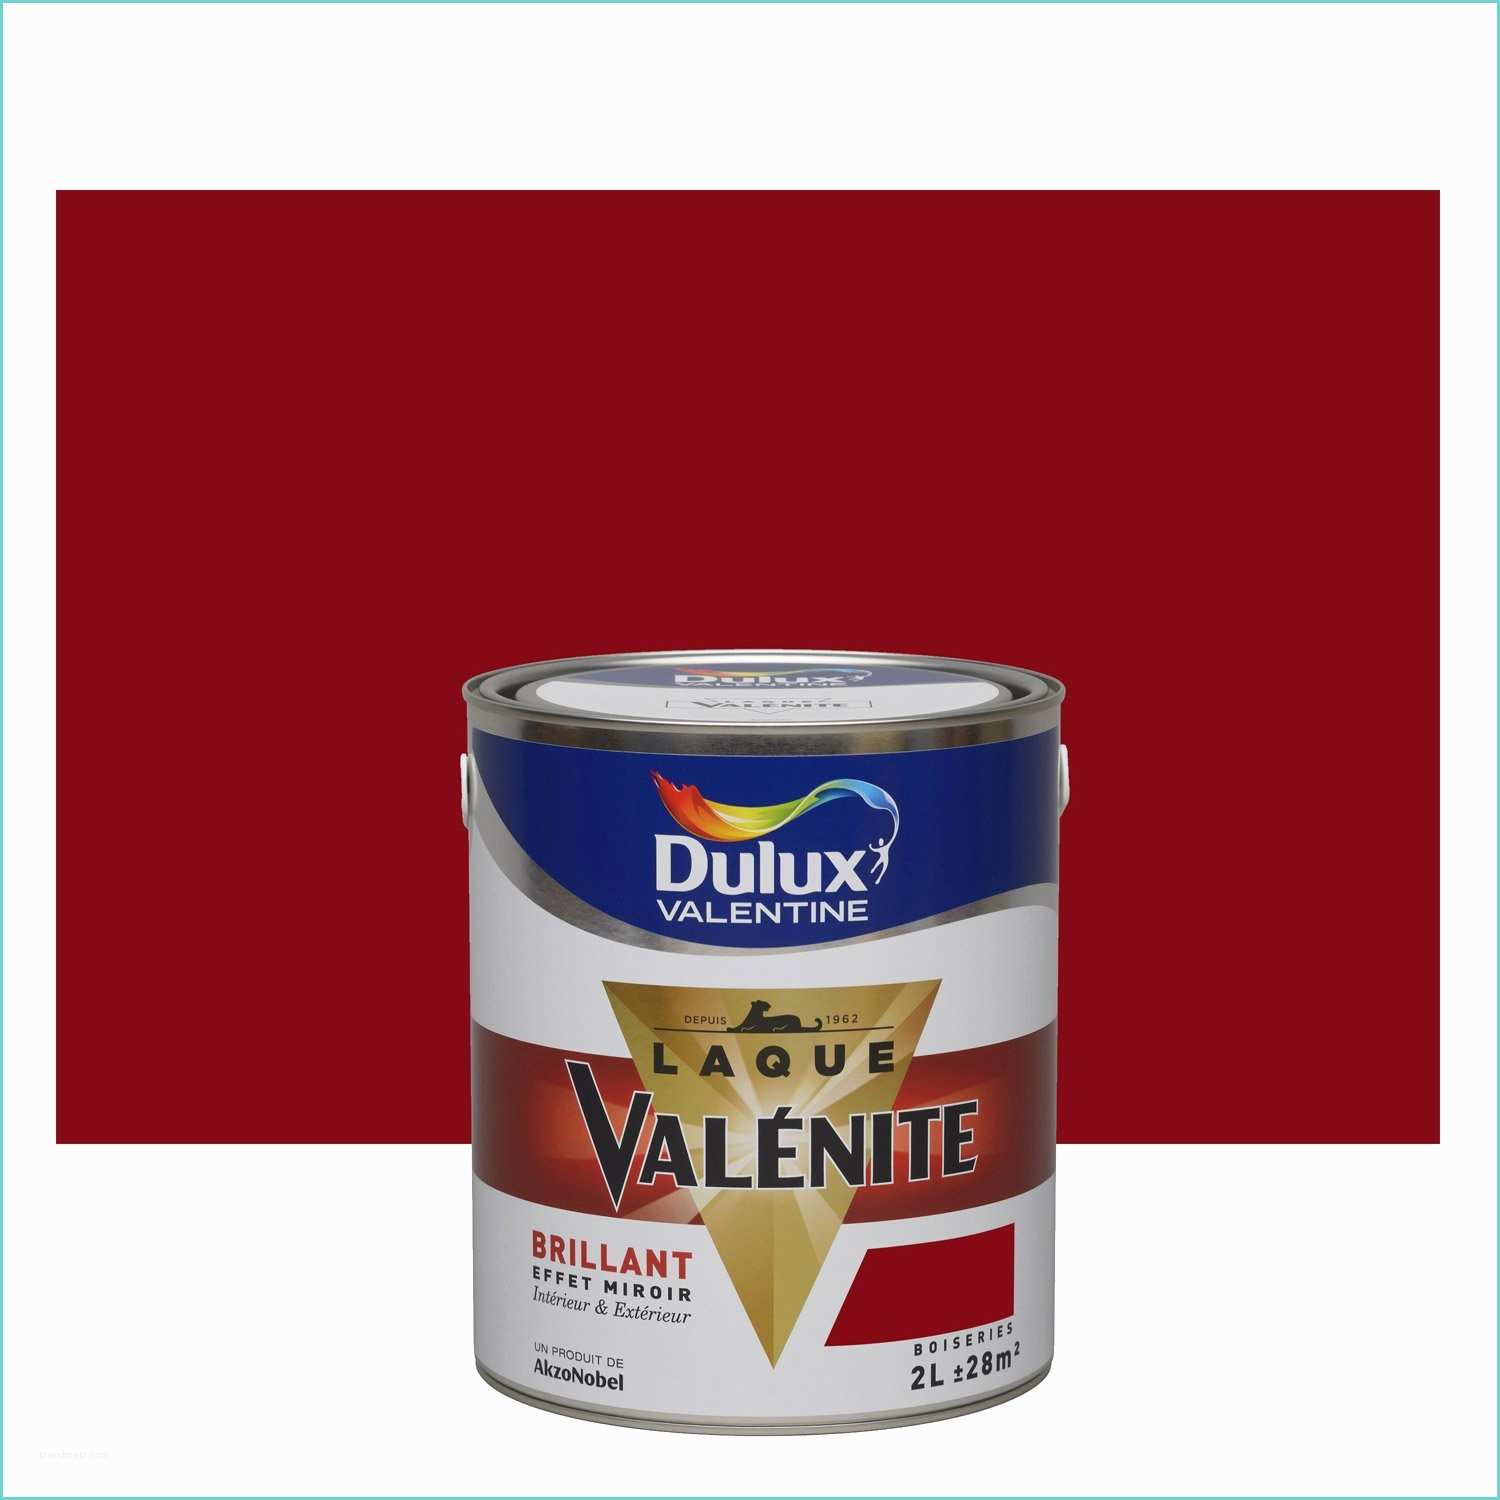 Leroy Merlin Dulux Peinture Rouge Basque Dulux Valentine Valénite 2 L